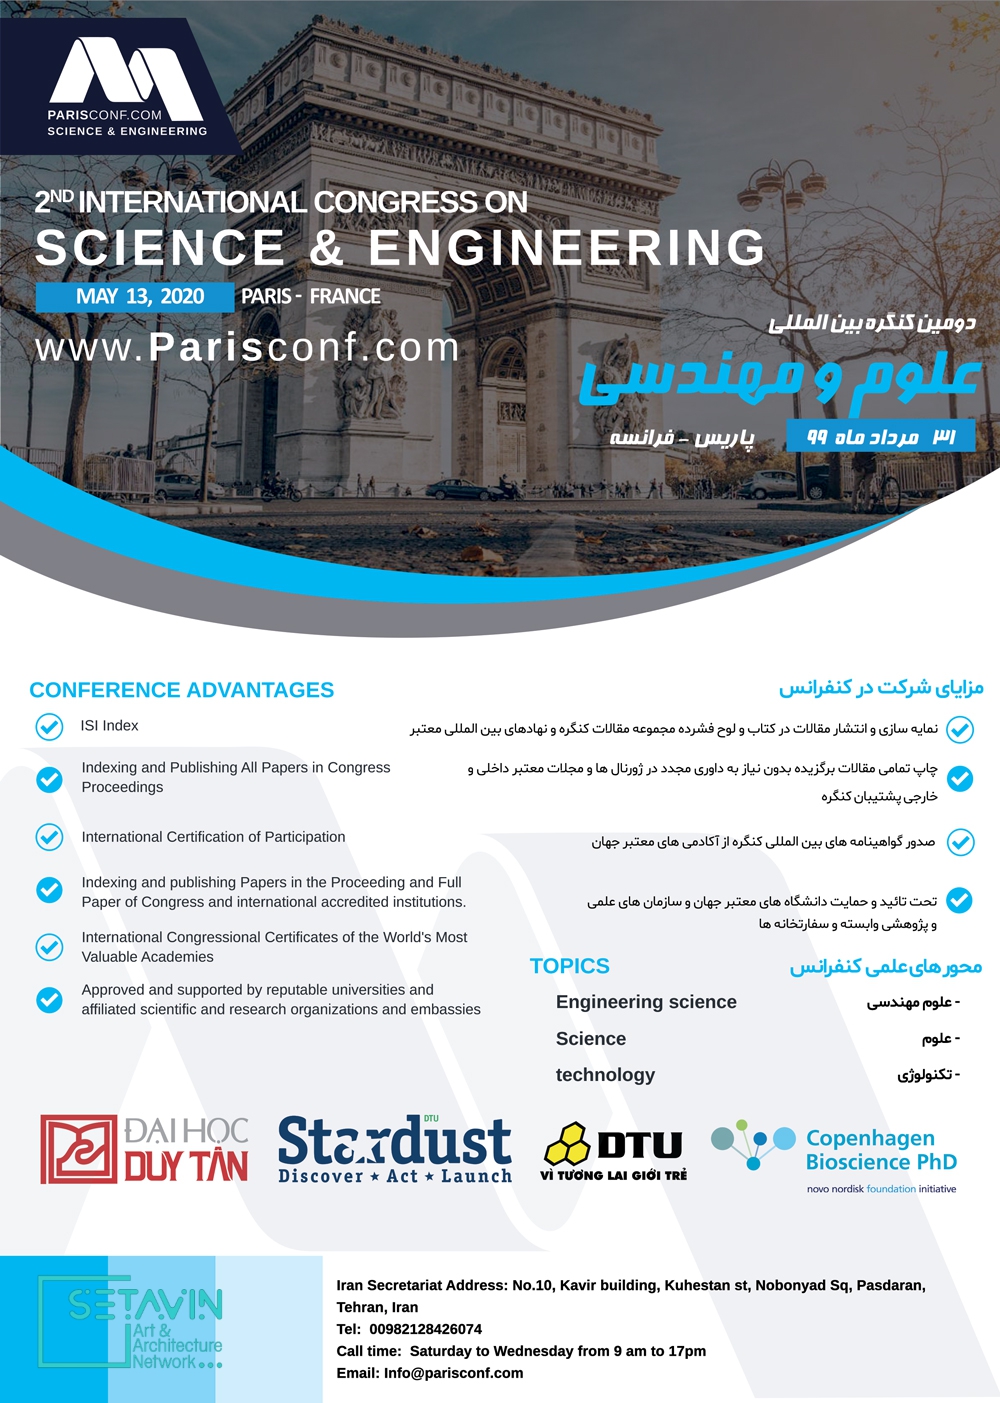 دومین کنگره بین المللی علوم و مهندسی , paris , پاریس , International Congress on science & Engineering , دومین کنگره بین المللی , علوم و مهندسی , فرانسه , علوم انسانی , تکنولوژی , همایش